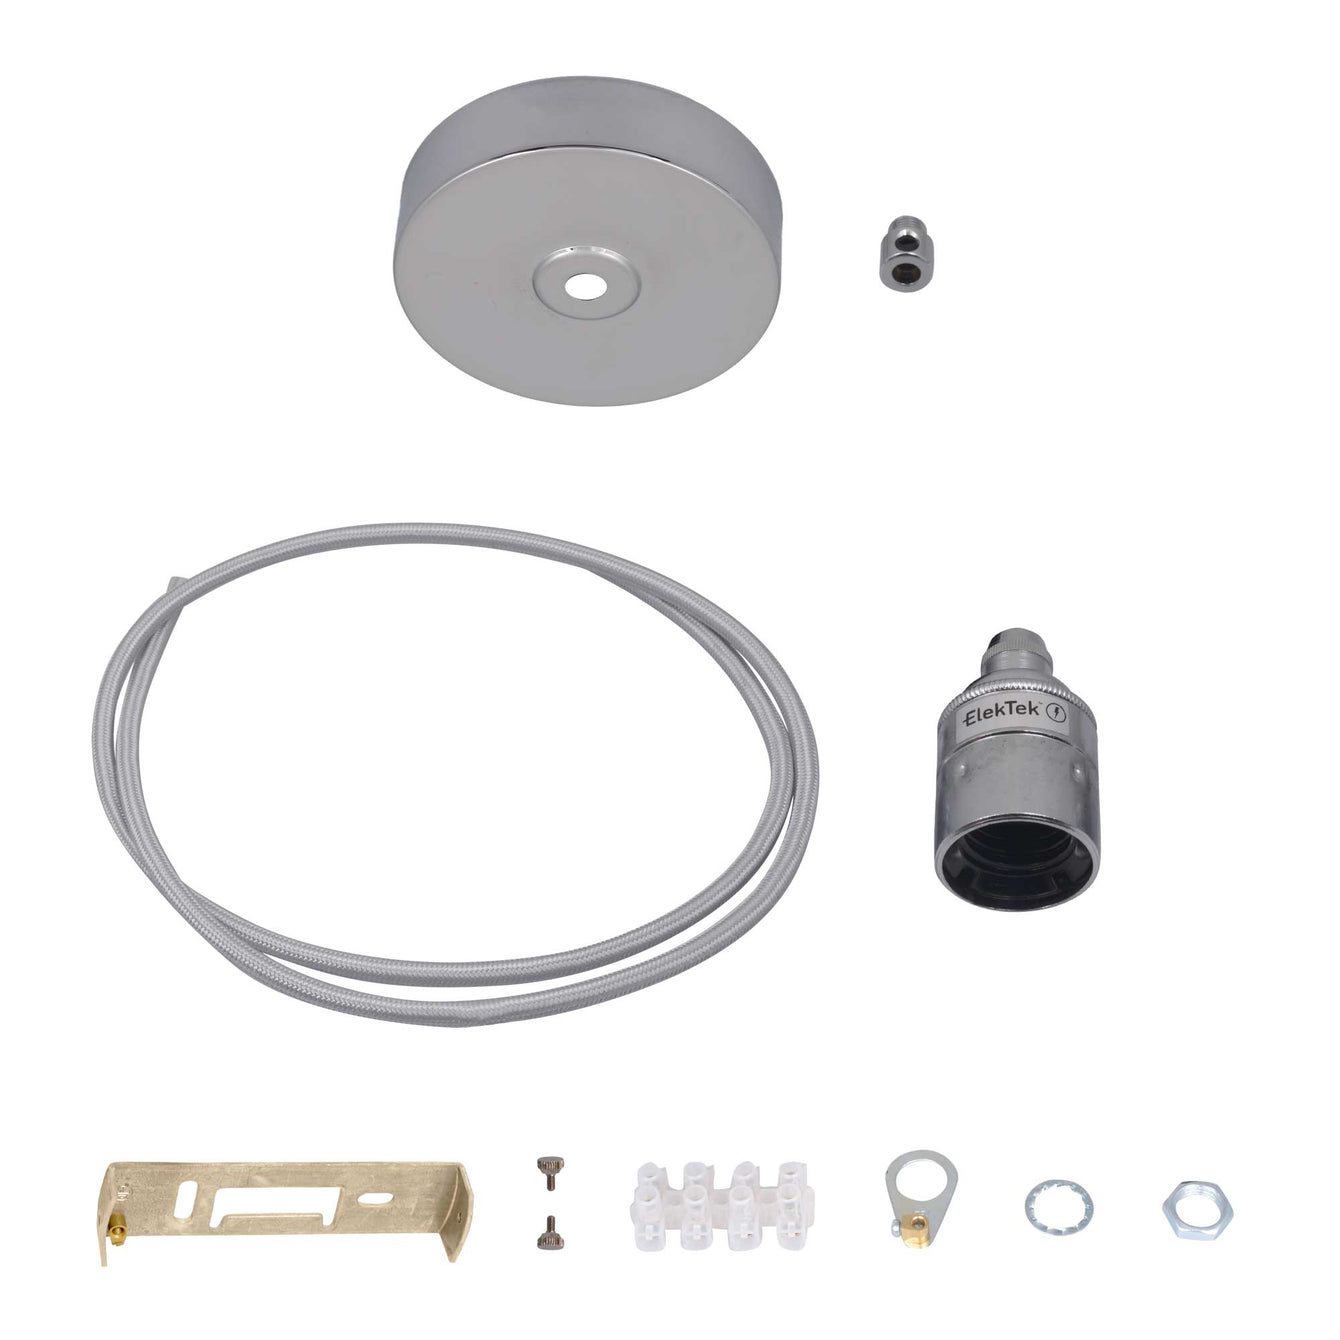 ElekTek Premium Pendant Light Kit DIY 100mm Flat Top Ceiling Rose, Round Flex and Lamp Holder E27 Plain Cord Grip - Buy It Better 